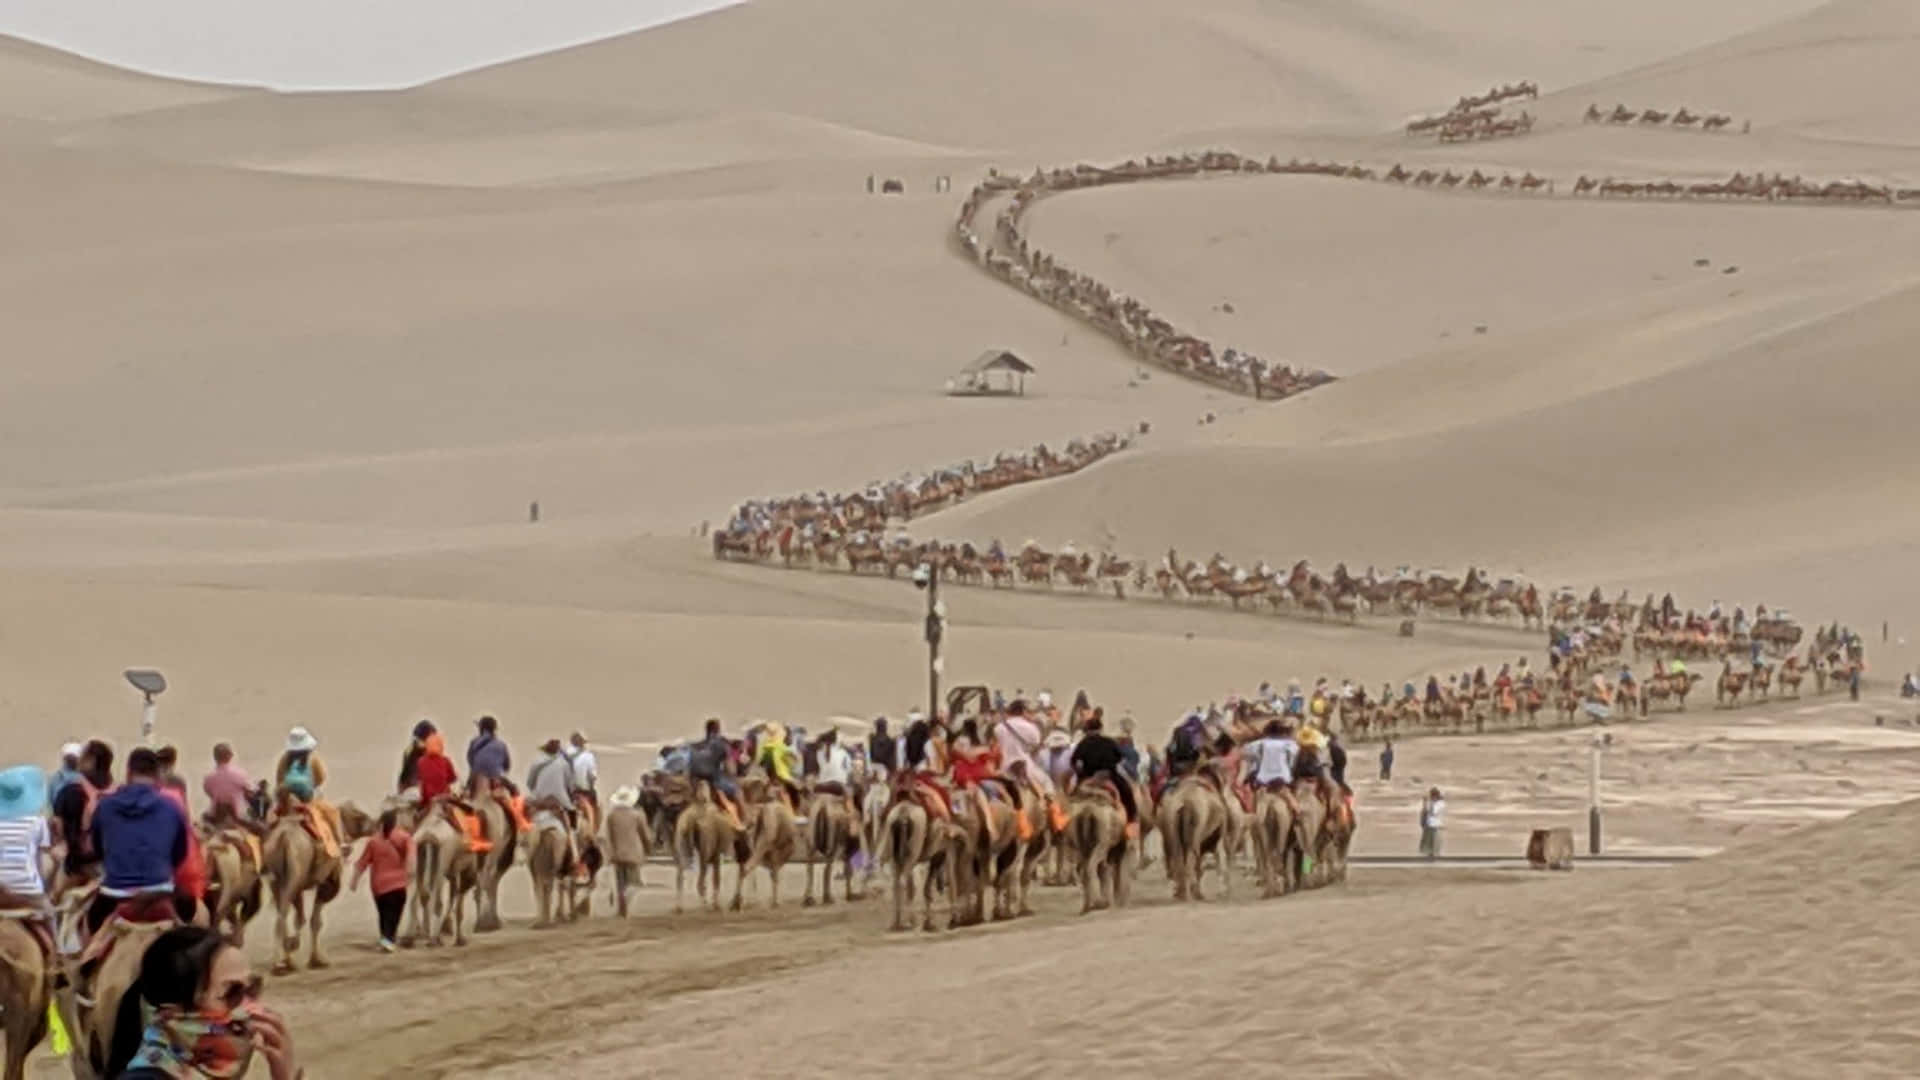 Ungrupo De Personas Montando Camellos En Un Desierto